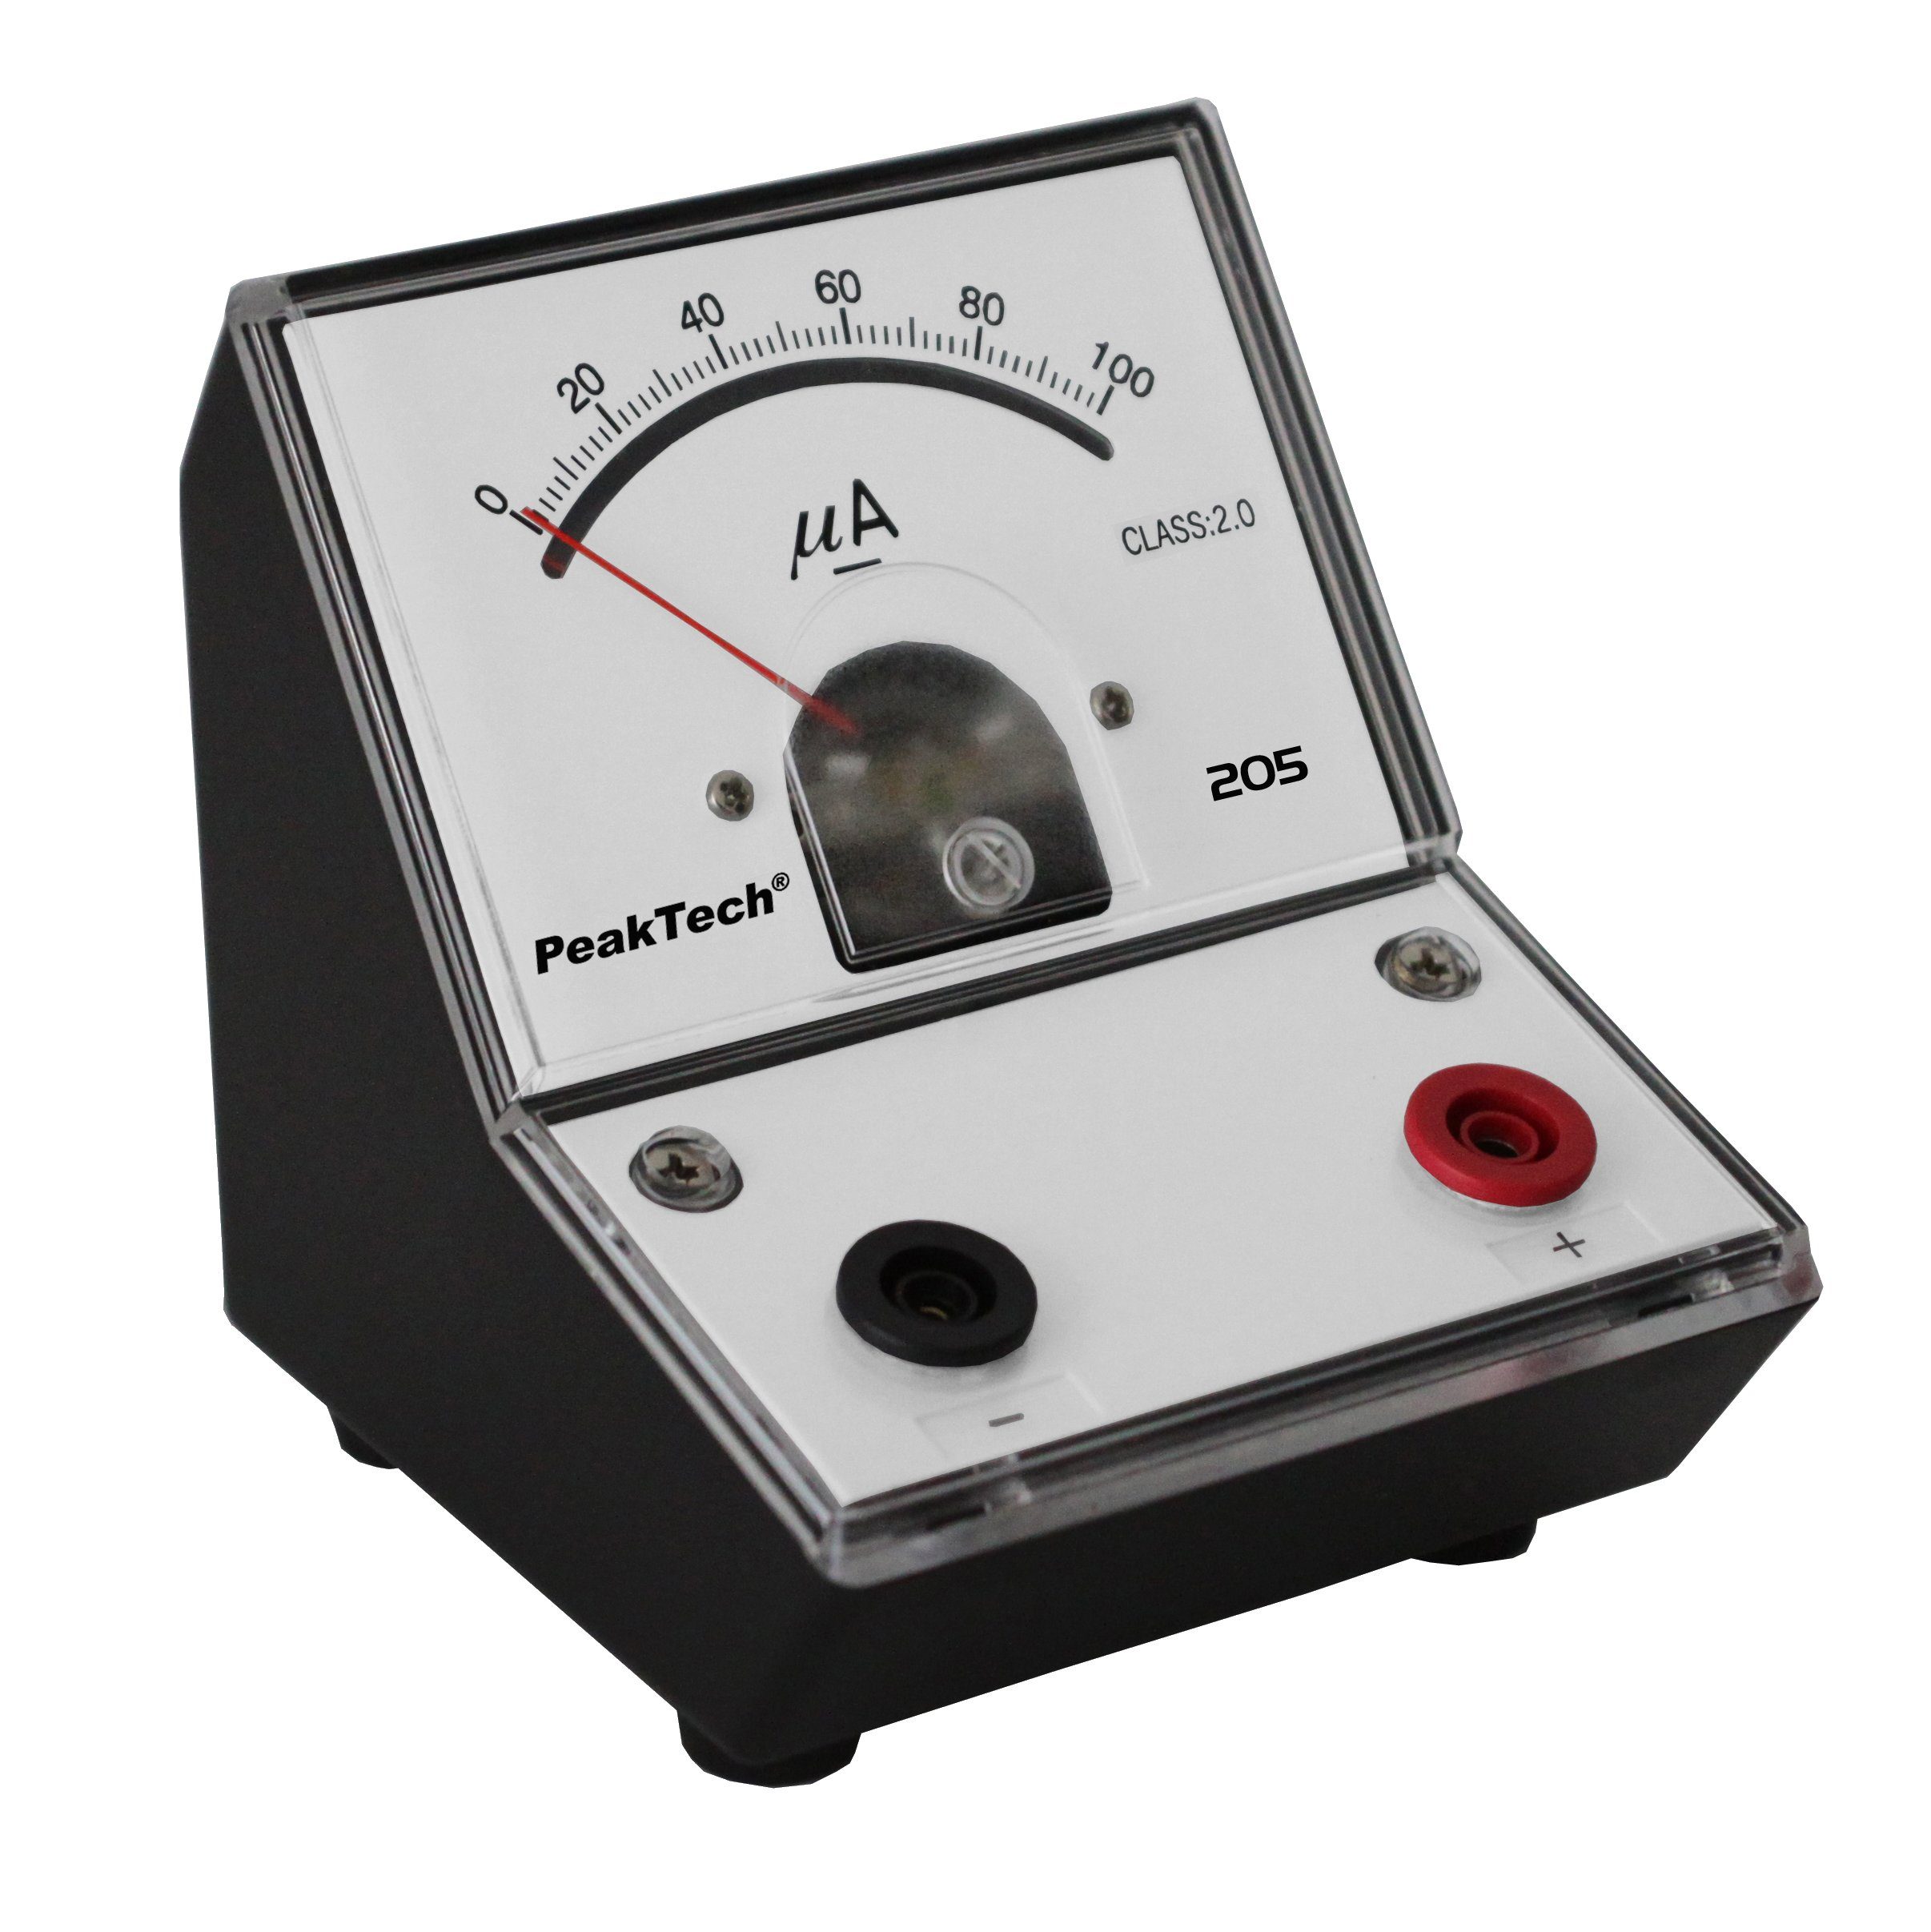 0 1-tlg. (ED-205 Strommessgerät - PeakTech µA 0-100), PeakTech 205-02: 100 Analog-Amperemeter P